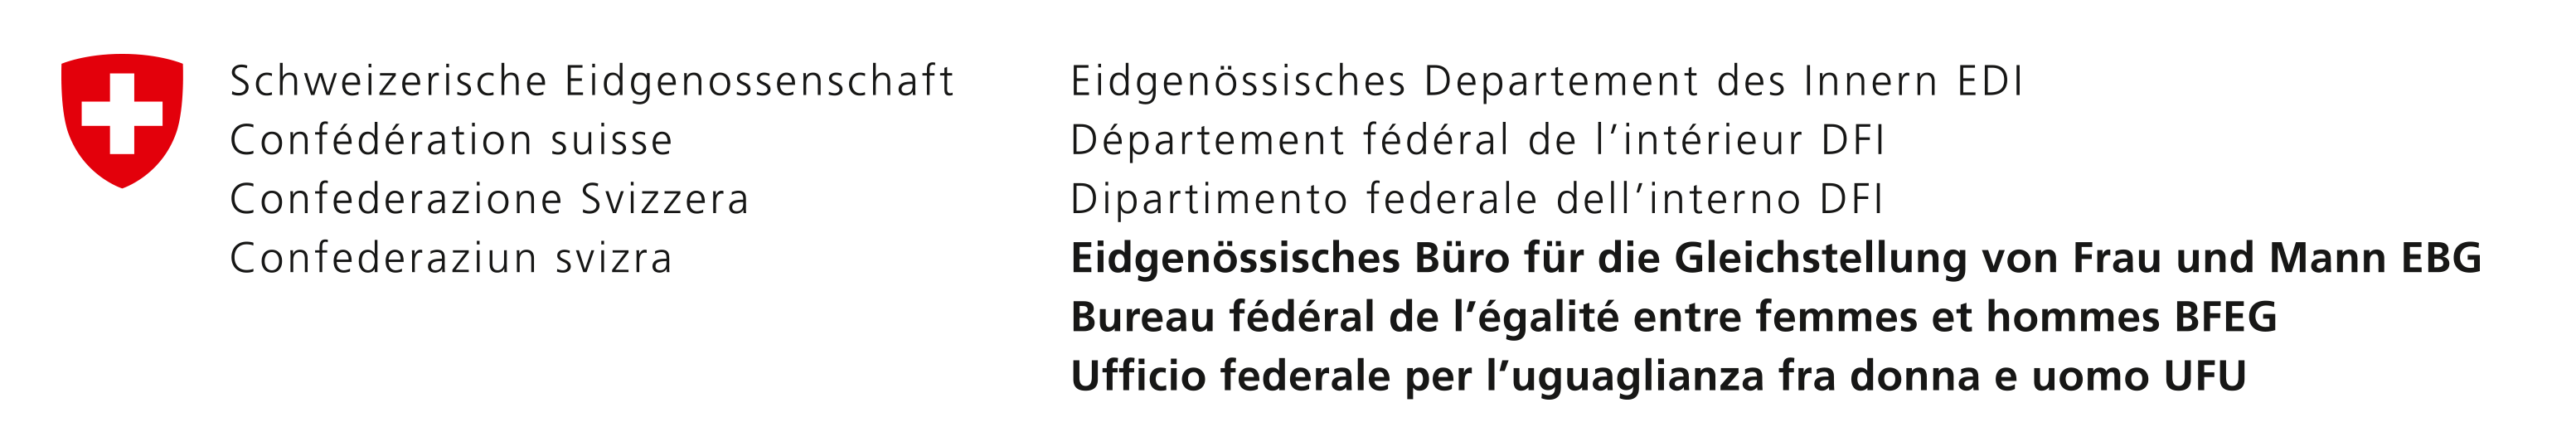 Logo - Eidgenössisches Büro für die Gleichstellung von Frau und Mann EBG